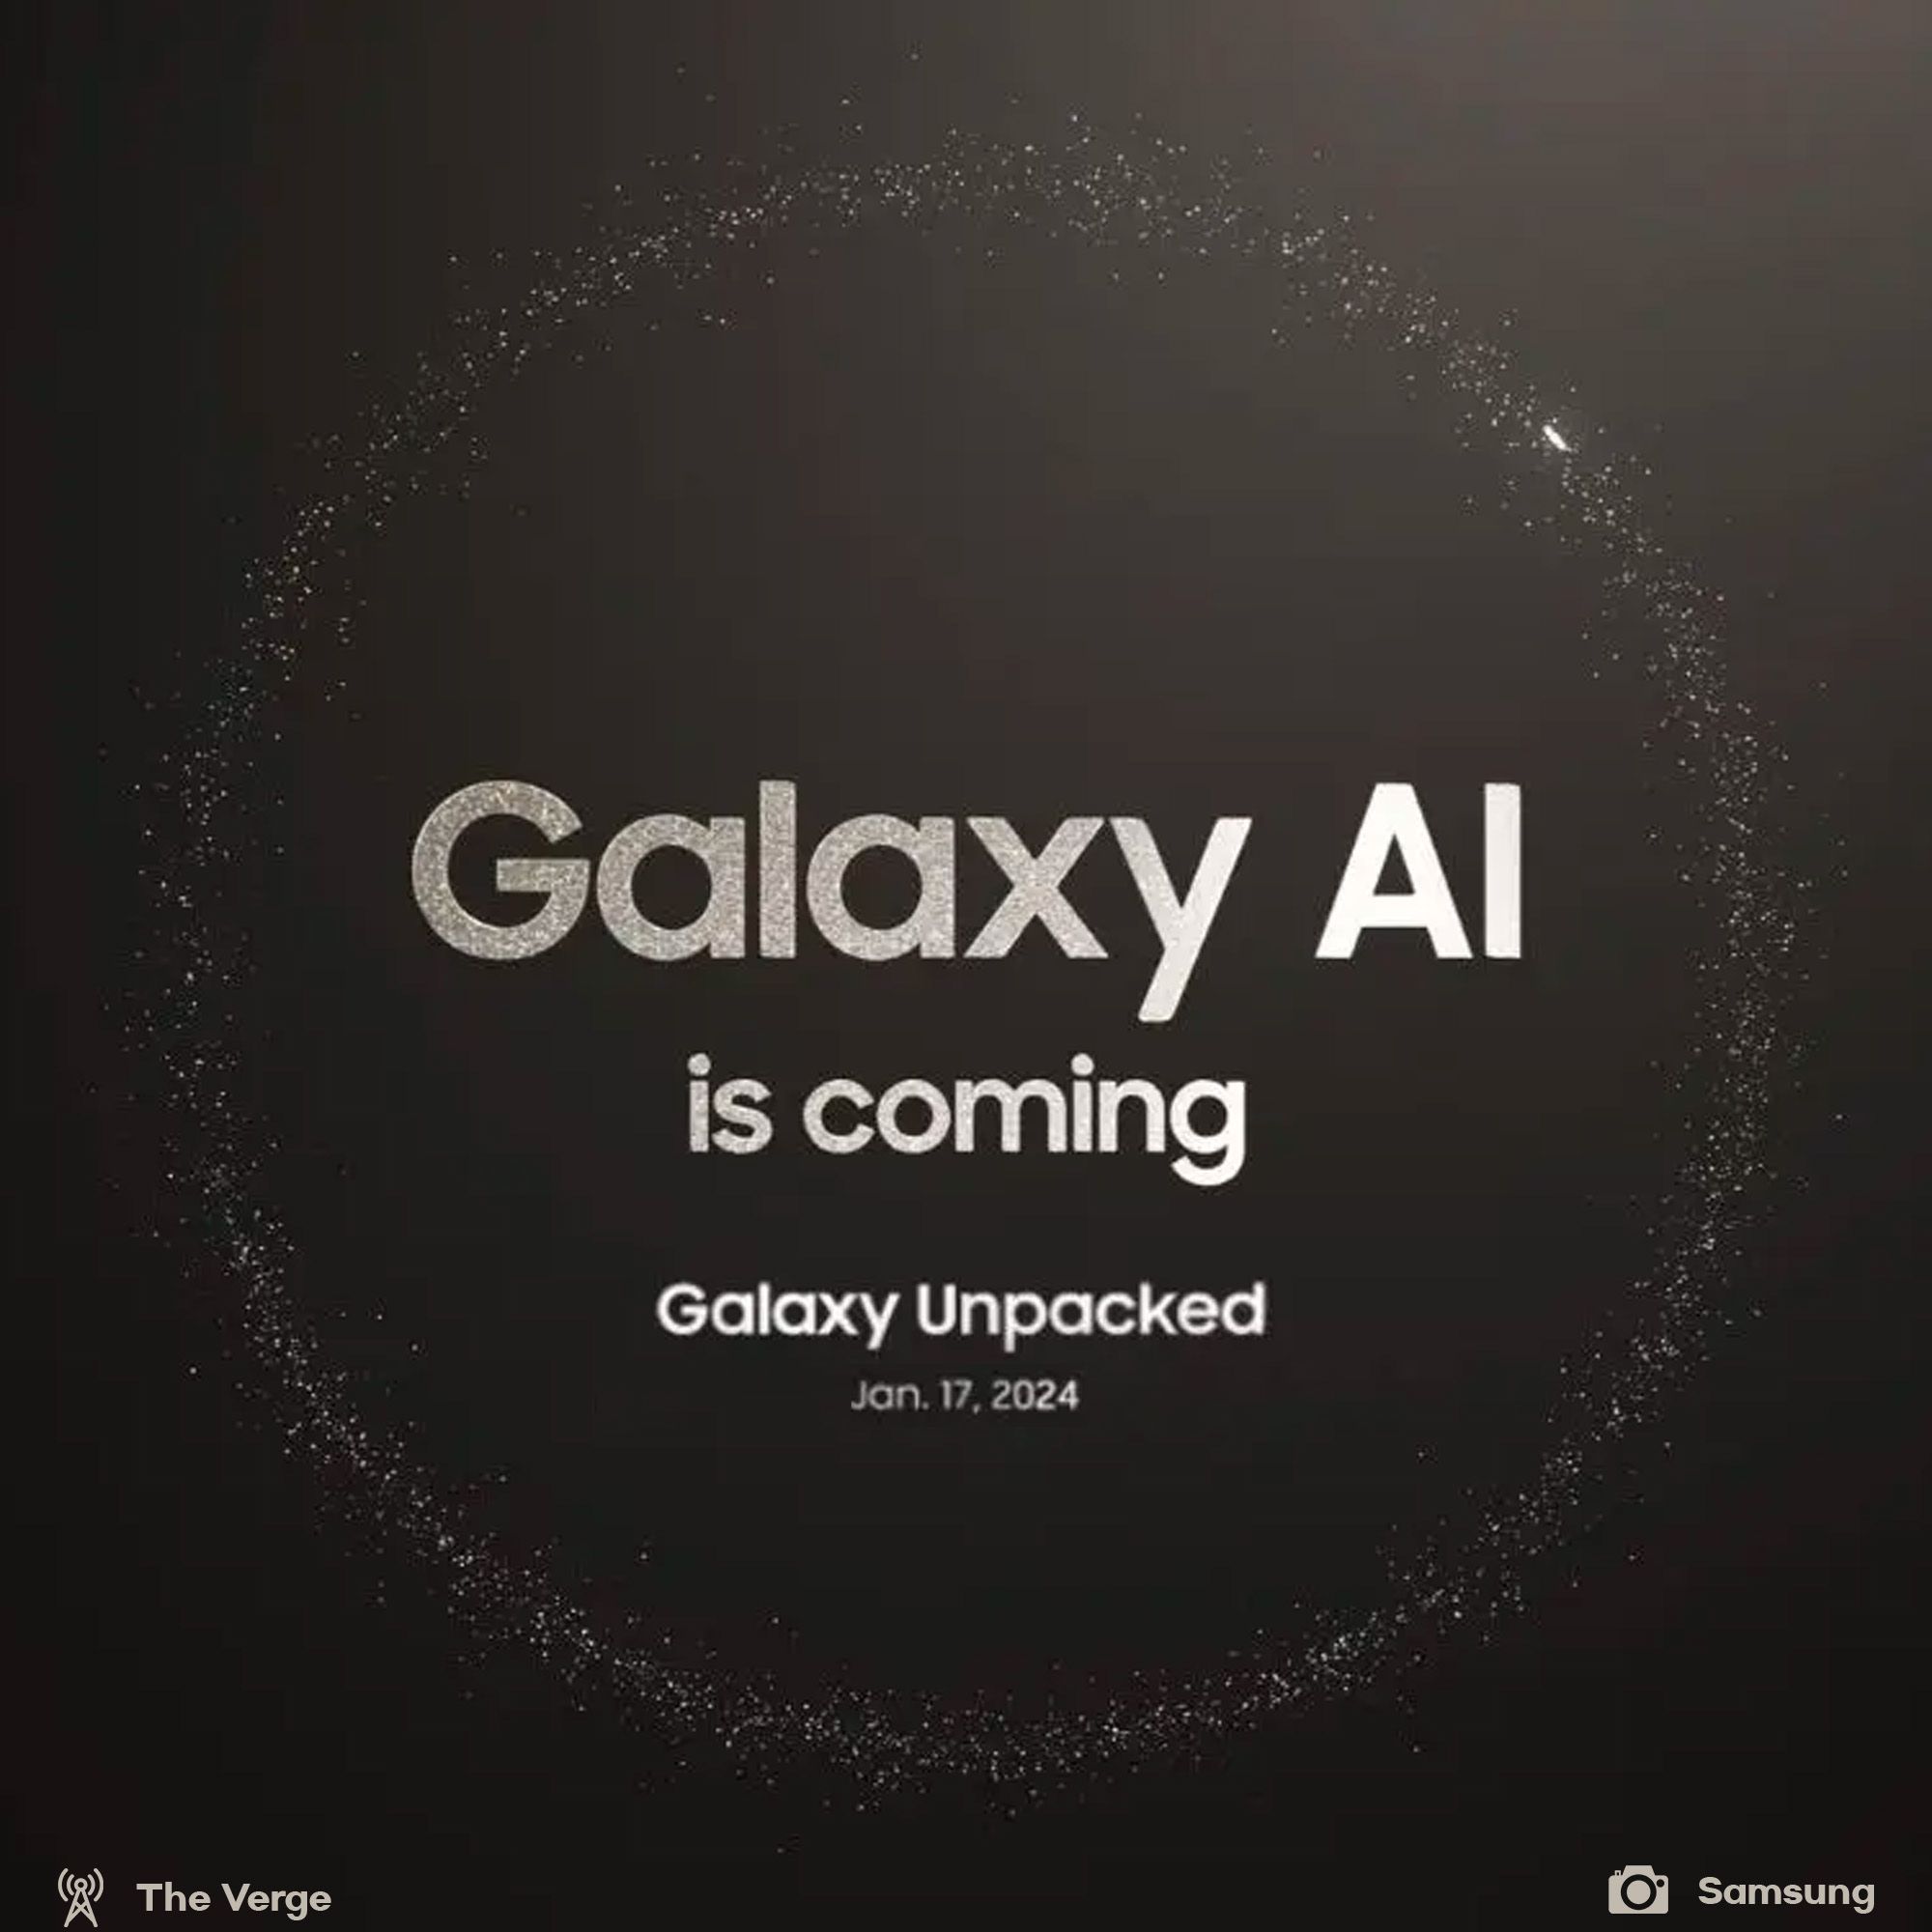 Samsung Galaxy Unpacked announced